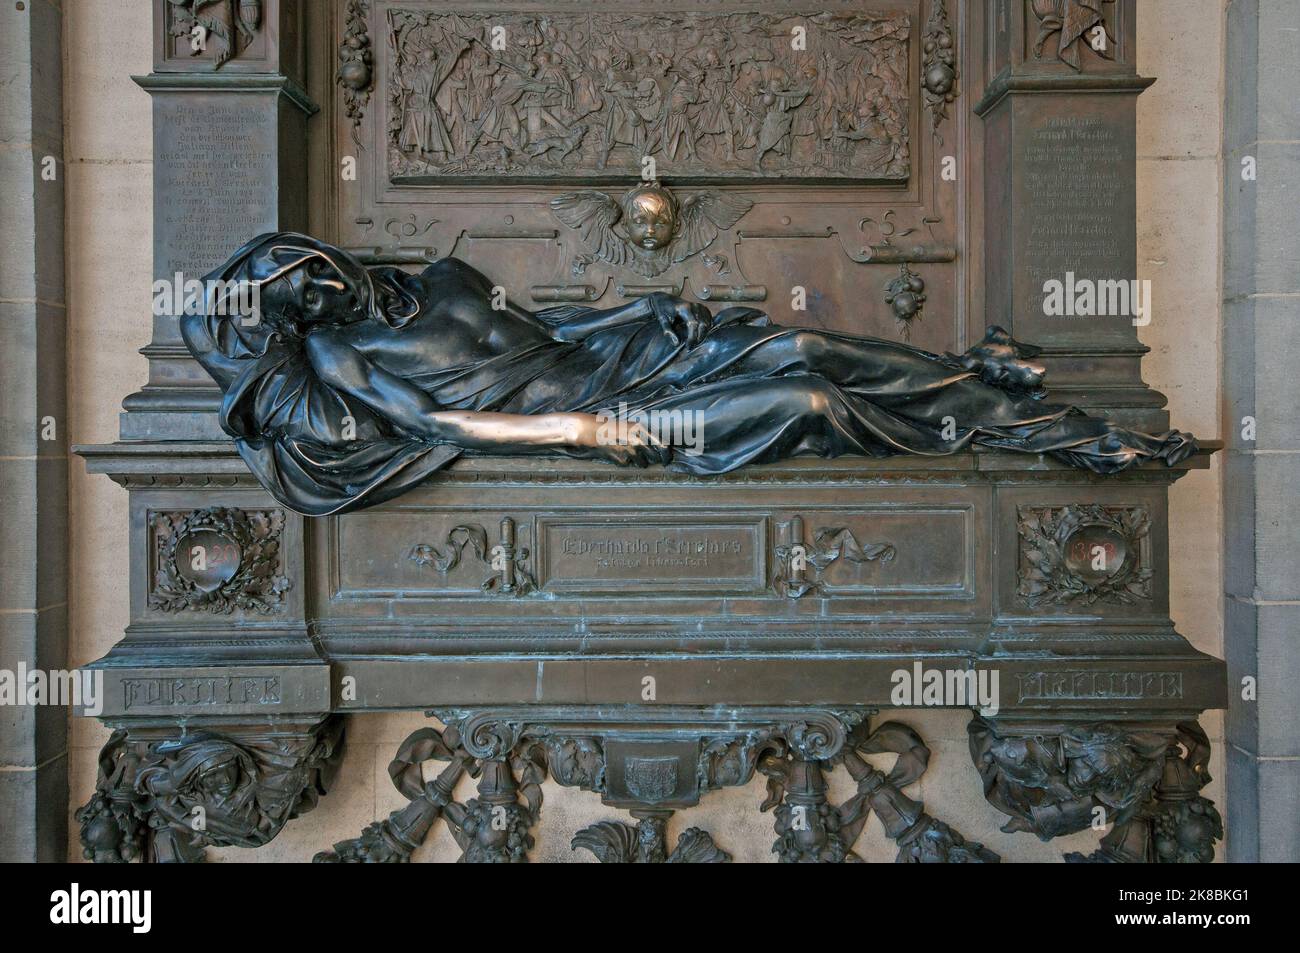 Statue de bronze d'Everard t'Serclaes, héros belge mort en 1338 (par le sculpteur Julien Dillens en 1902), Bruxelles, Belgique Banque D'Images